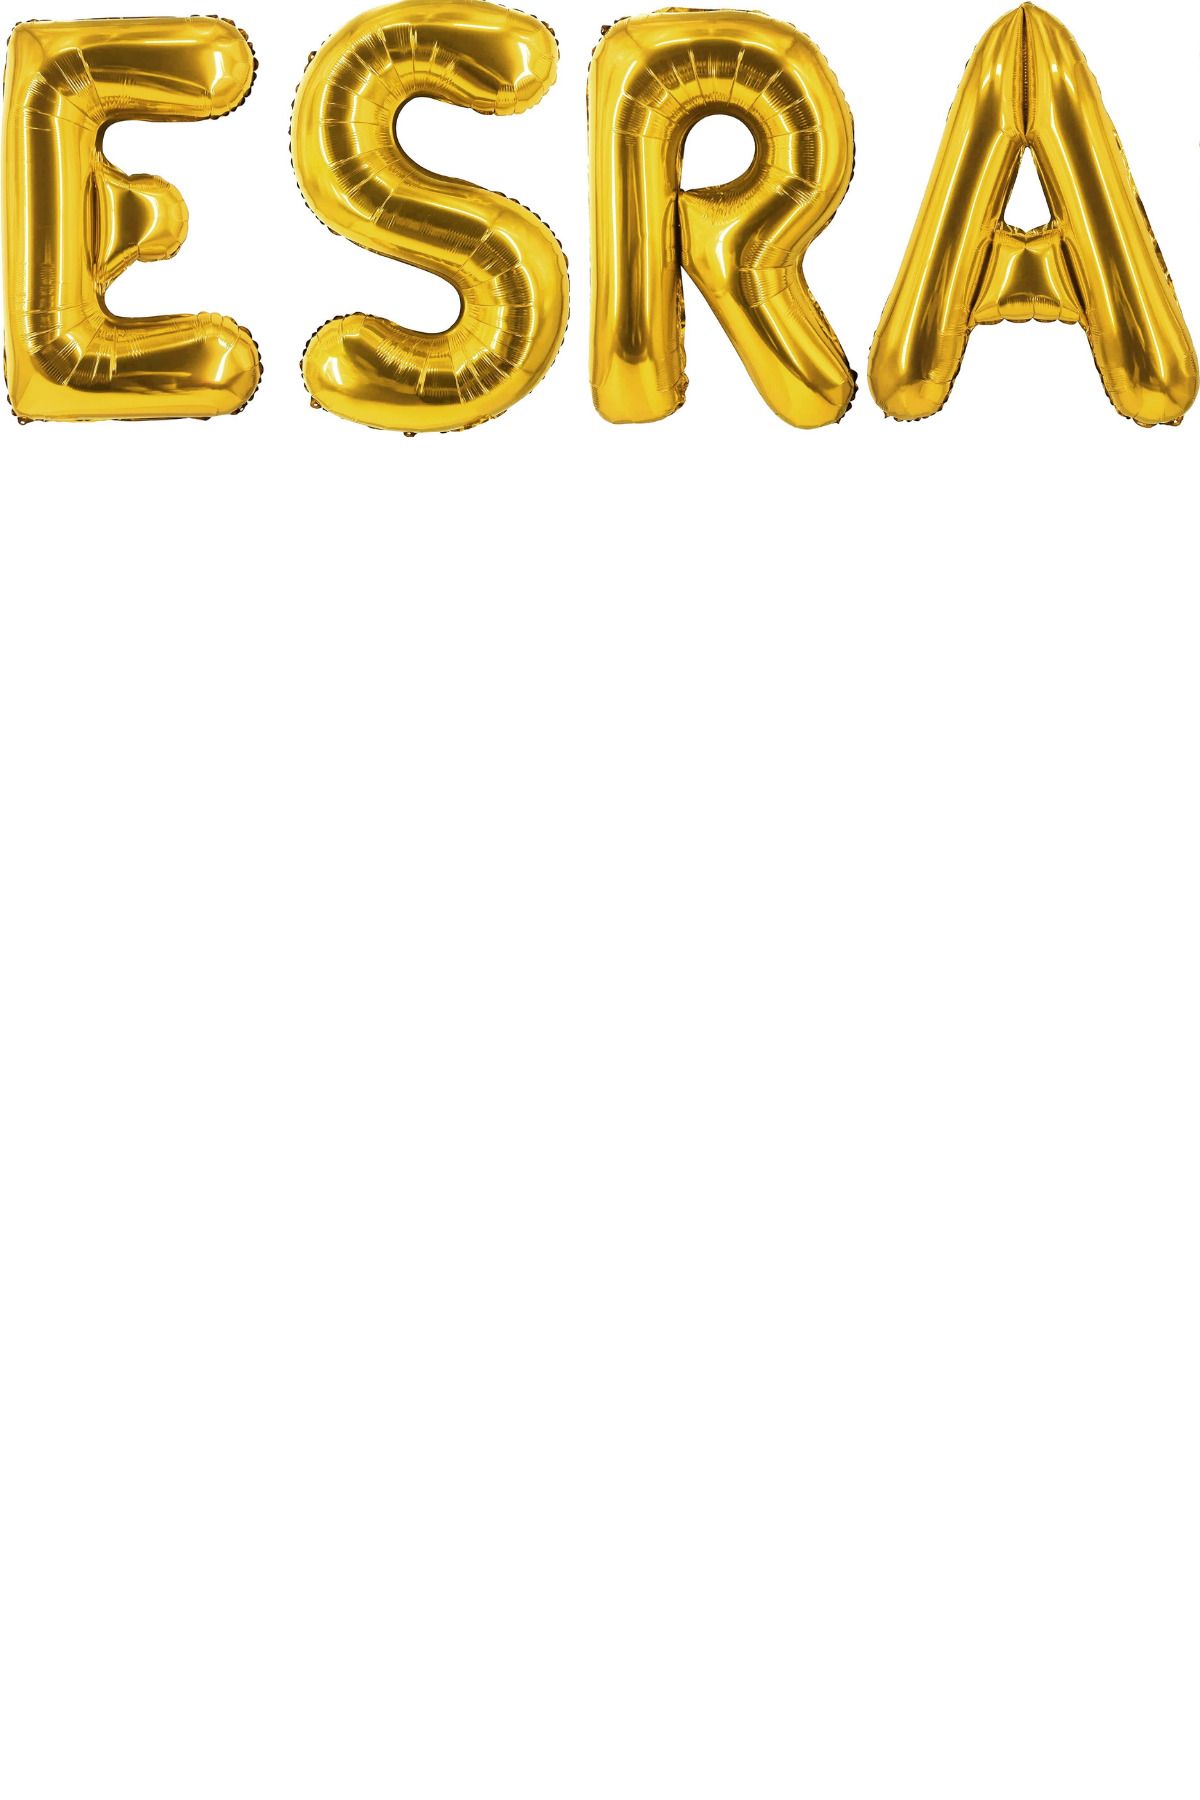 ELGALA Folyo Balon Özel İsim Yazılı Helyum Balon 40 cm Altın Renk